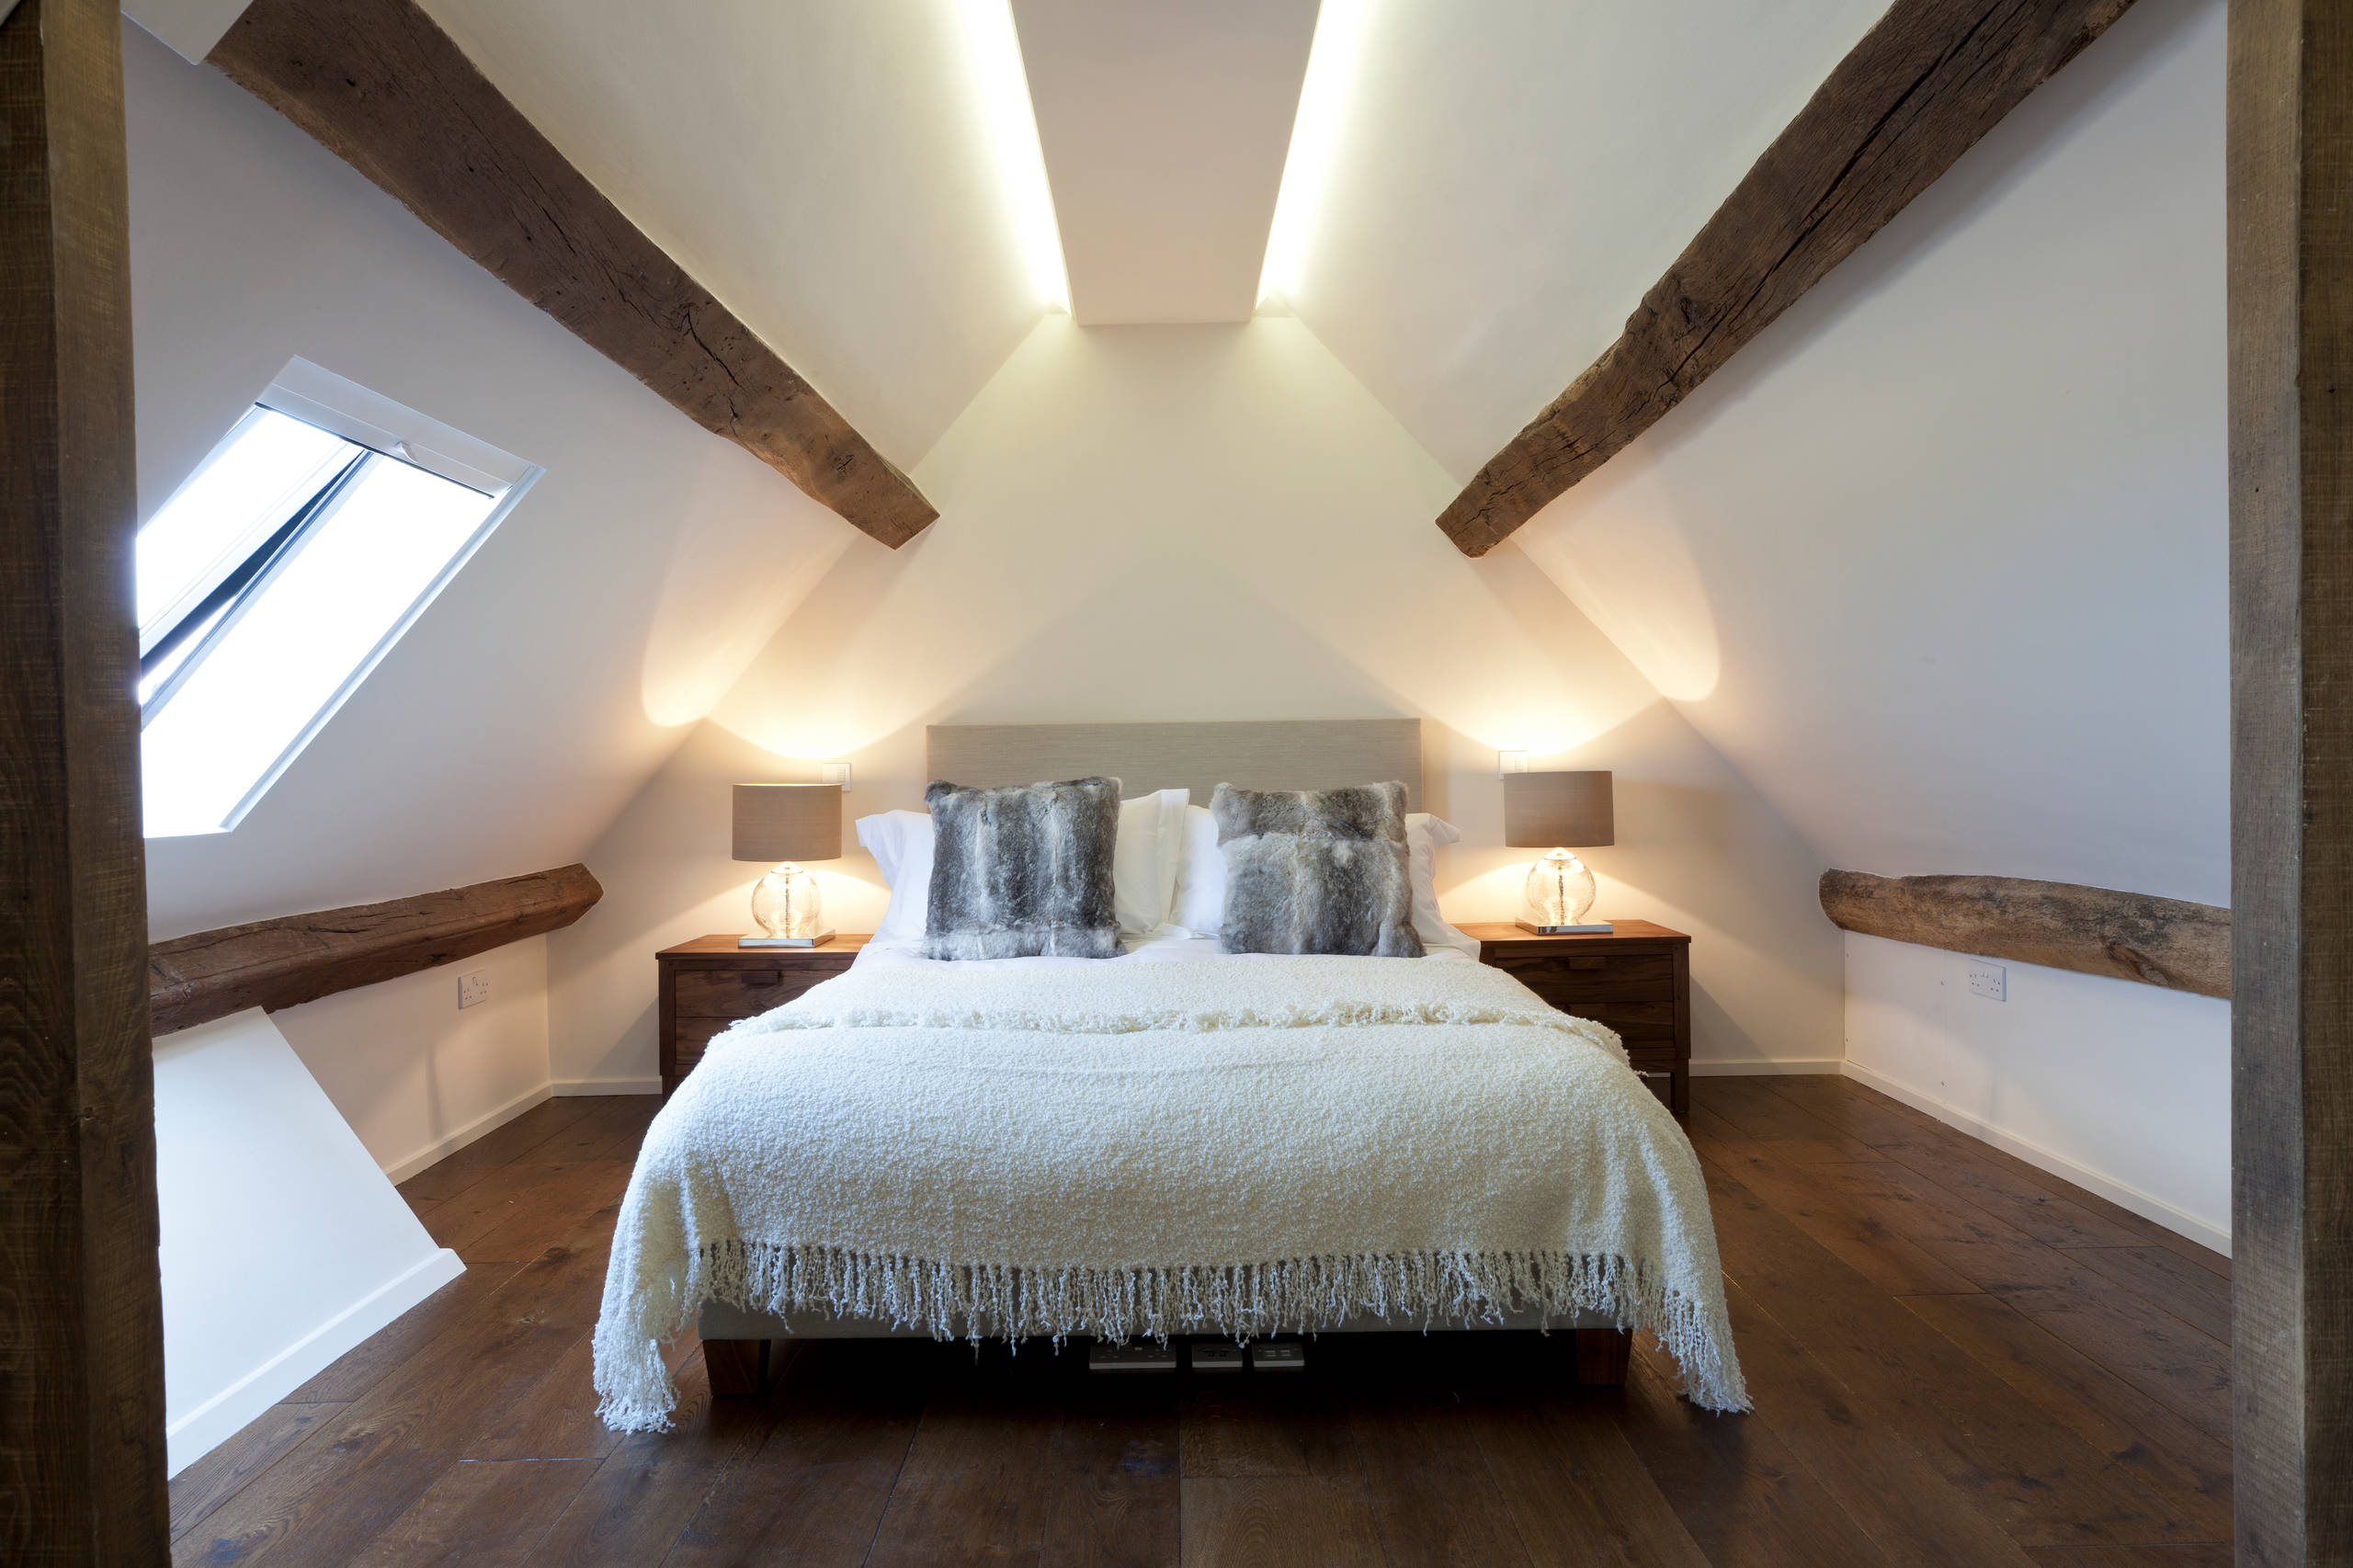 Schlafzimmer Mit Dachschrage Gestalten 8 Tipps